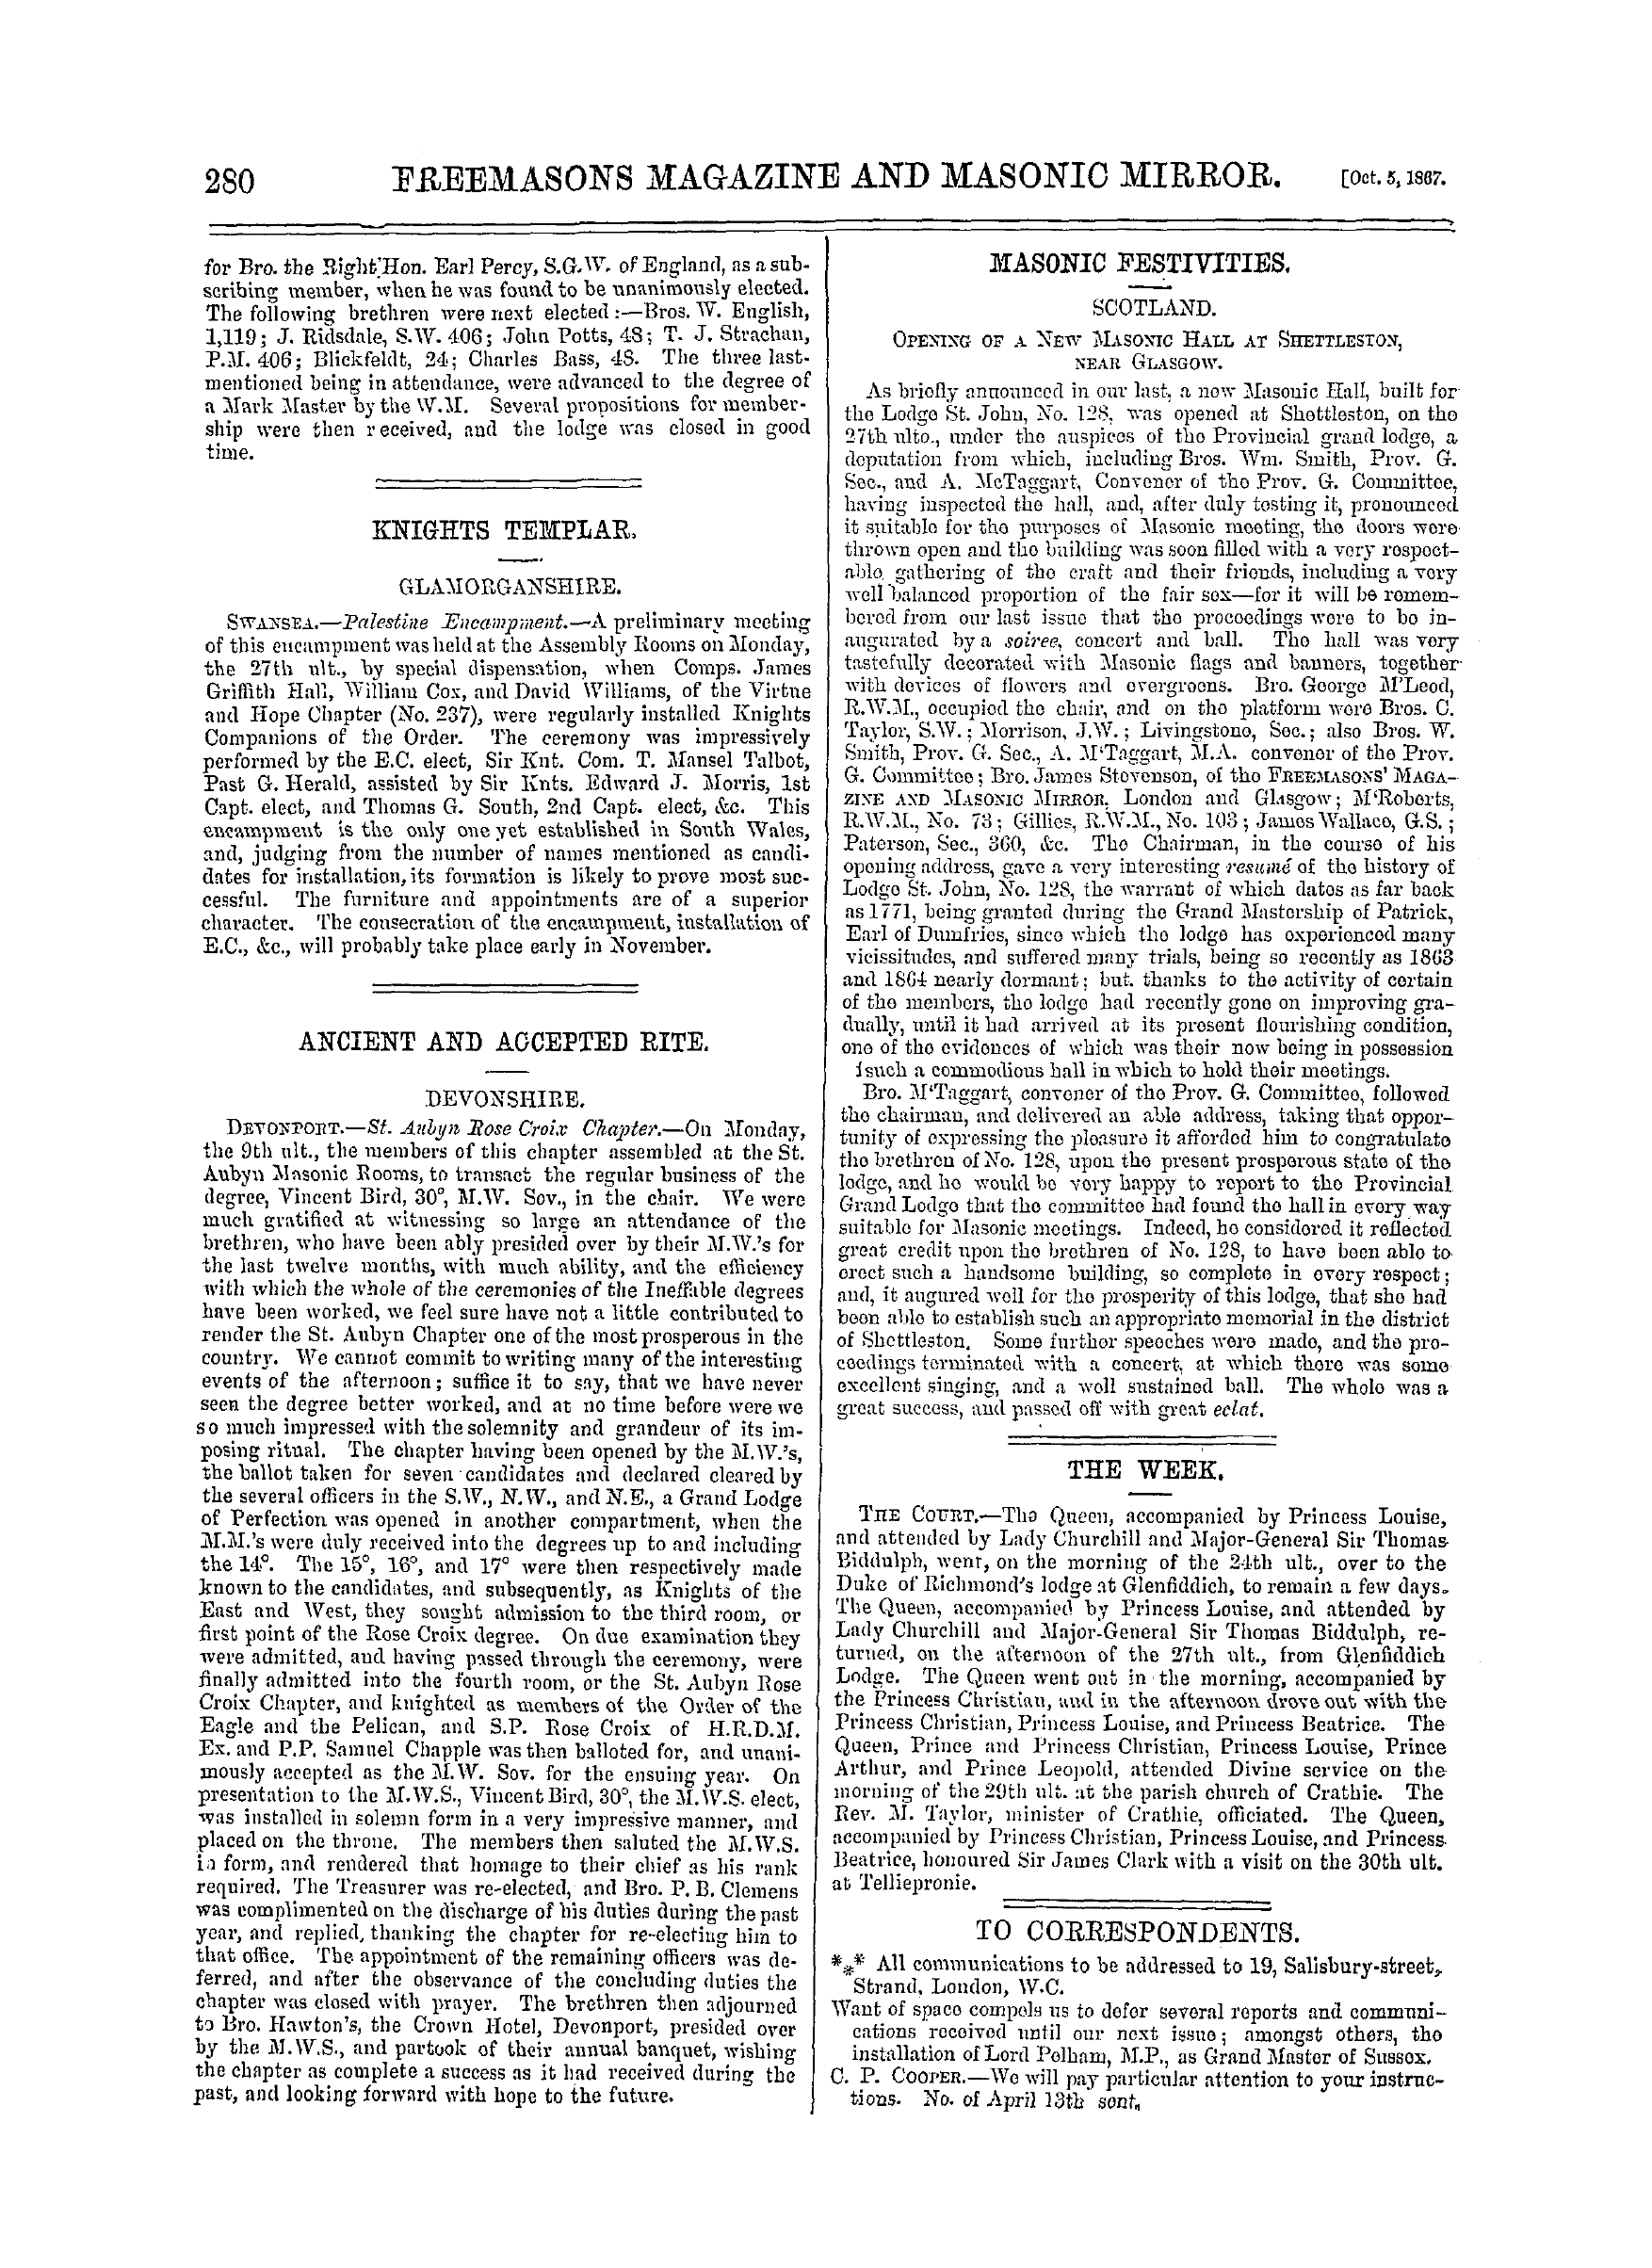 The Freemasons' Monthly Magazine: 1867-10-05 - Mark Masonry.